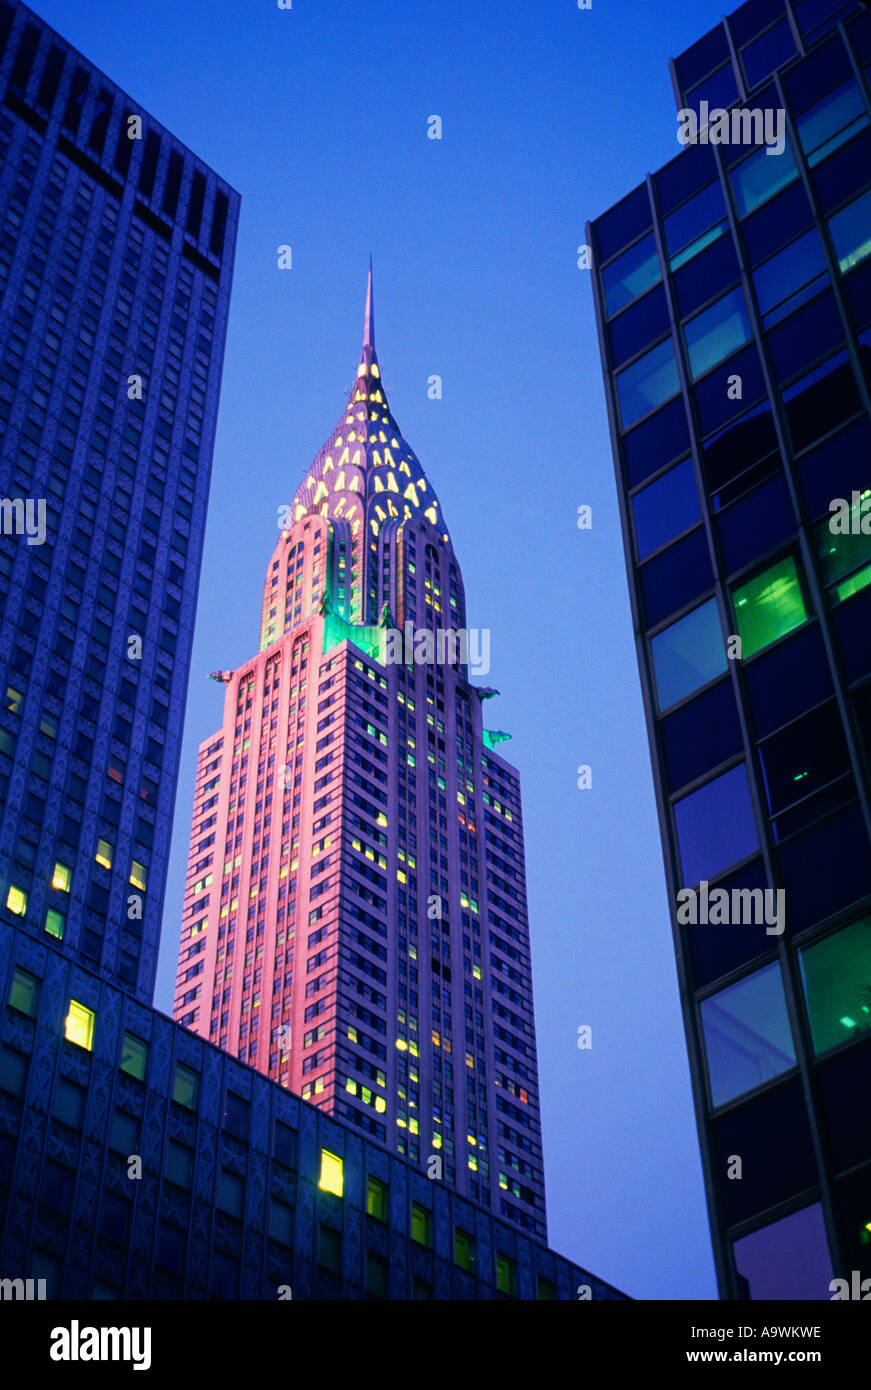 Le Chrysler Building de New York, vu de la rue, illuminé au crépuscule. Architecture art déco dans le bâtiment de bureaux de Midtown Manhattan. ÉTATS-UNIS Banque D'Images